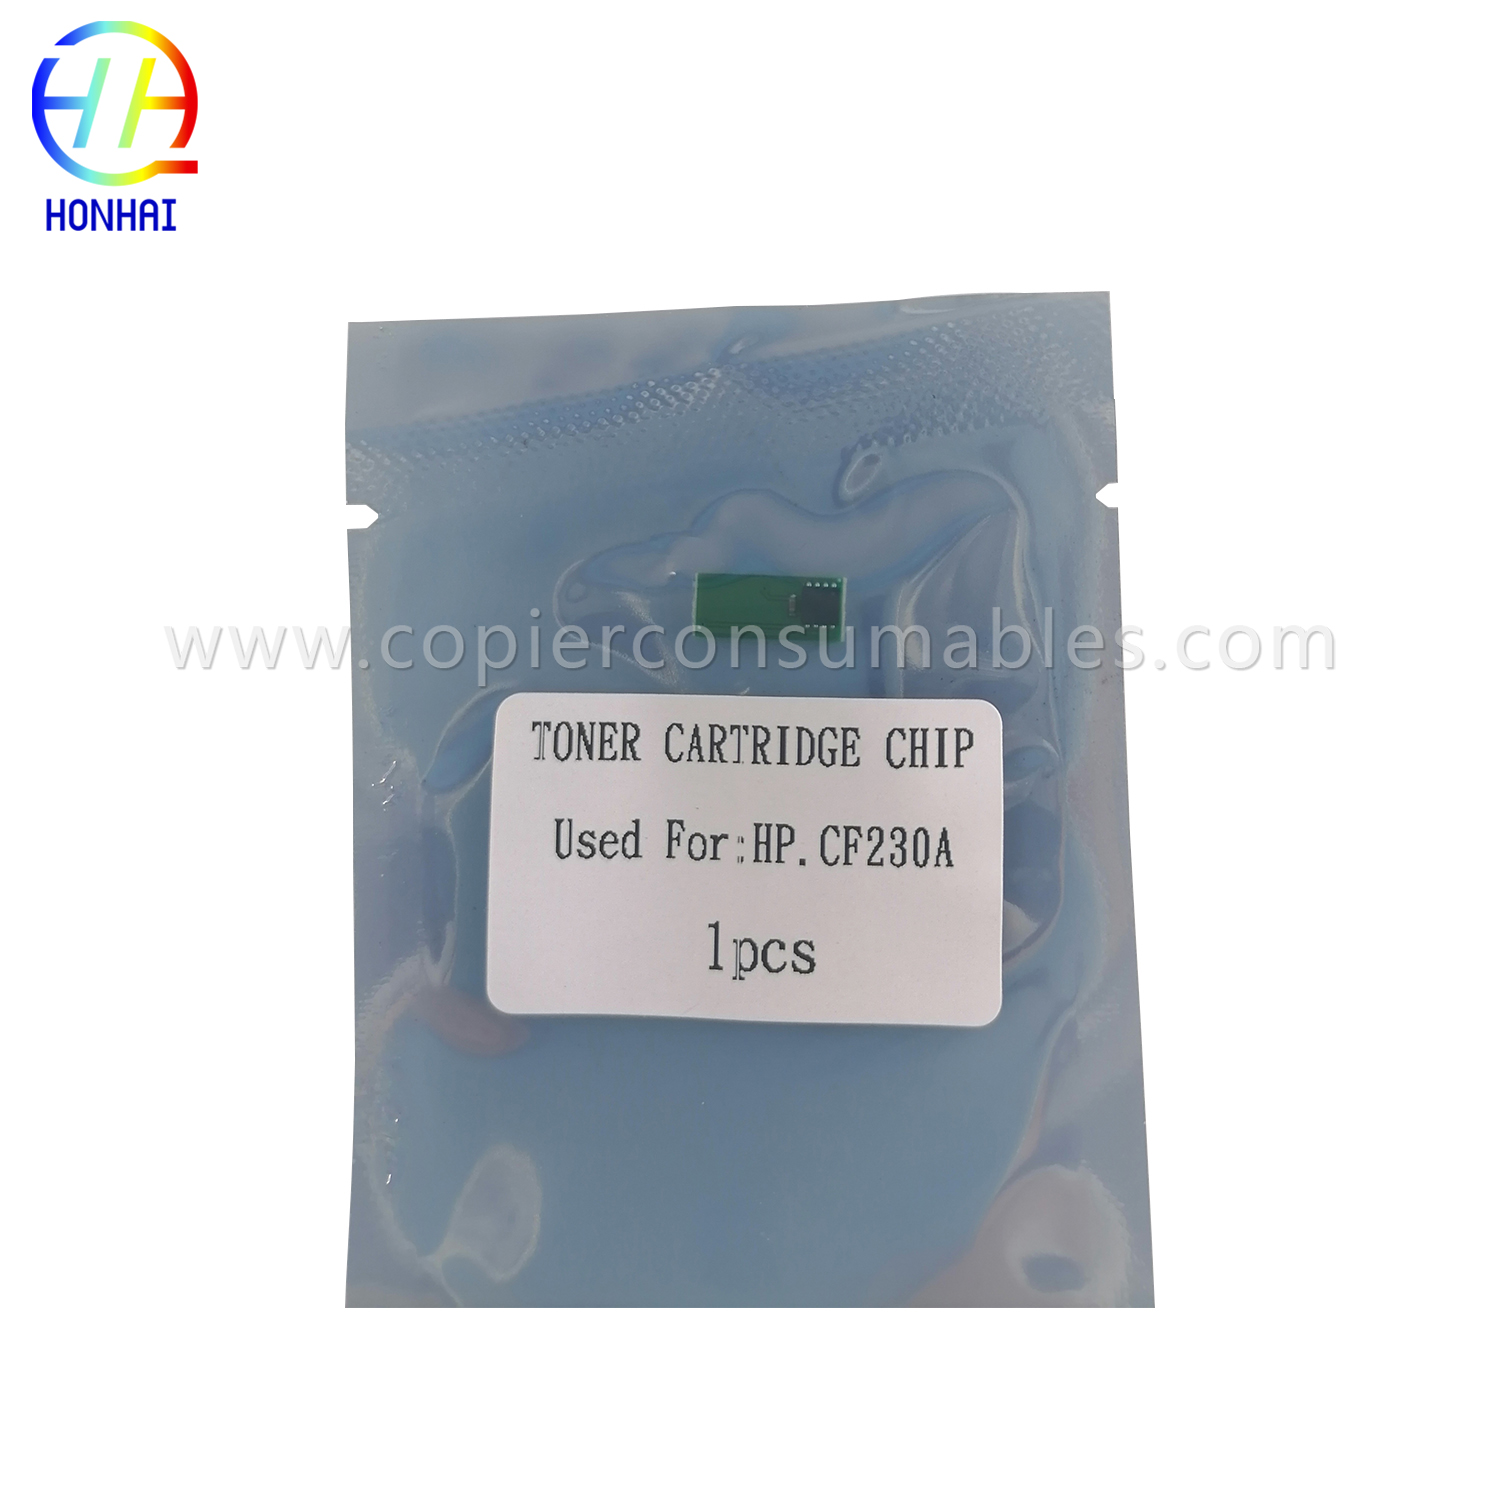 I-Toner Chip HP M203 CF230A (1) 拷贝